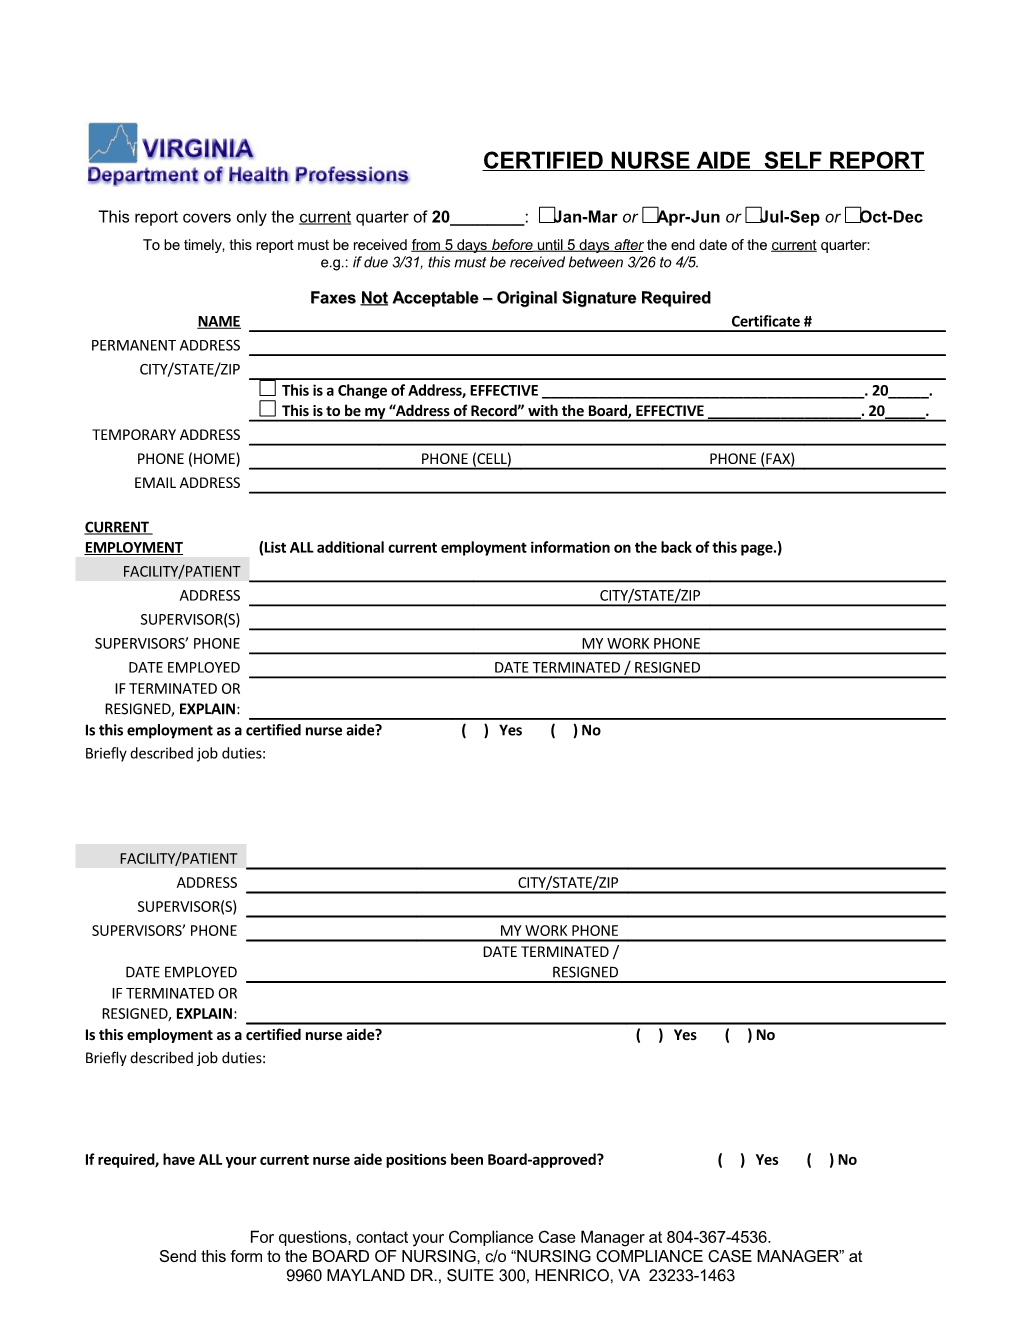 Self Report Form - Certified Nurse Aide